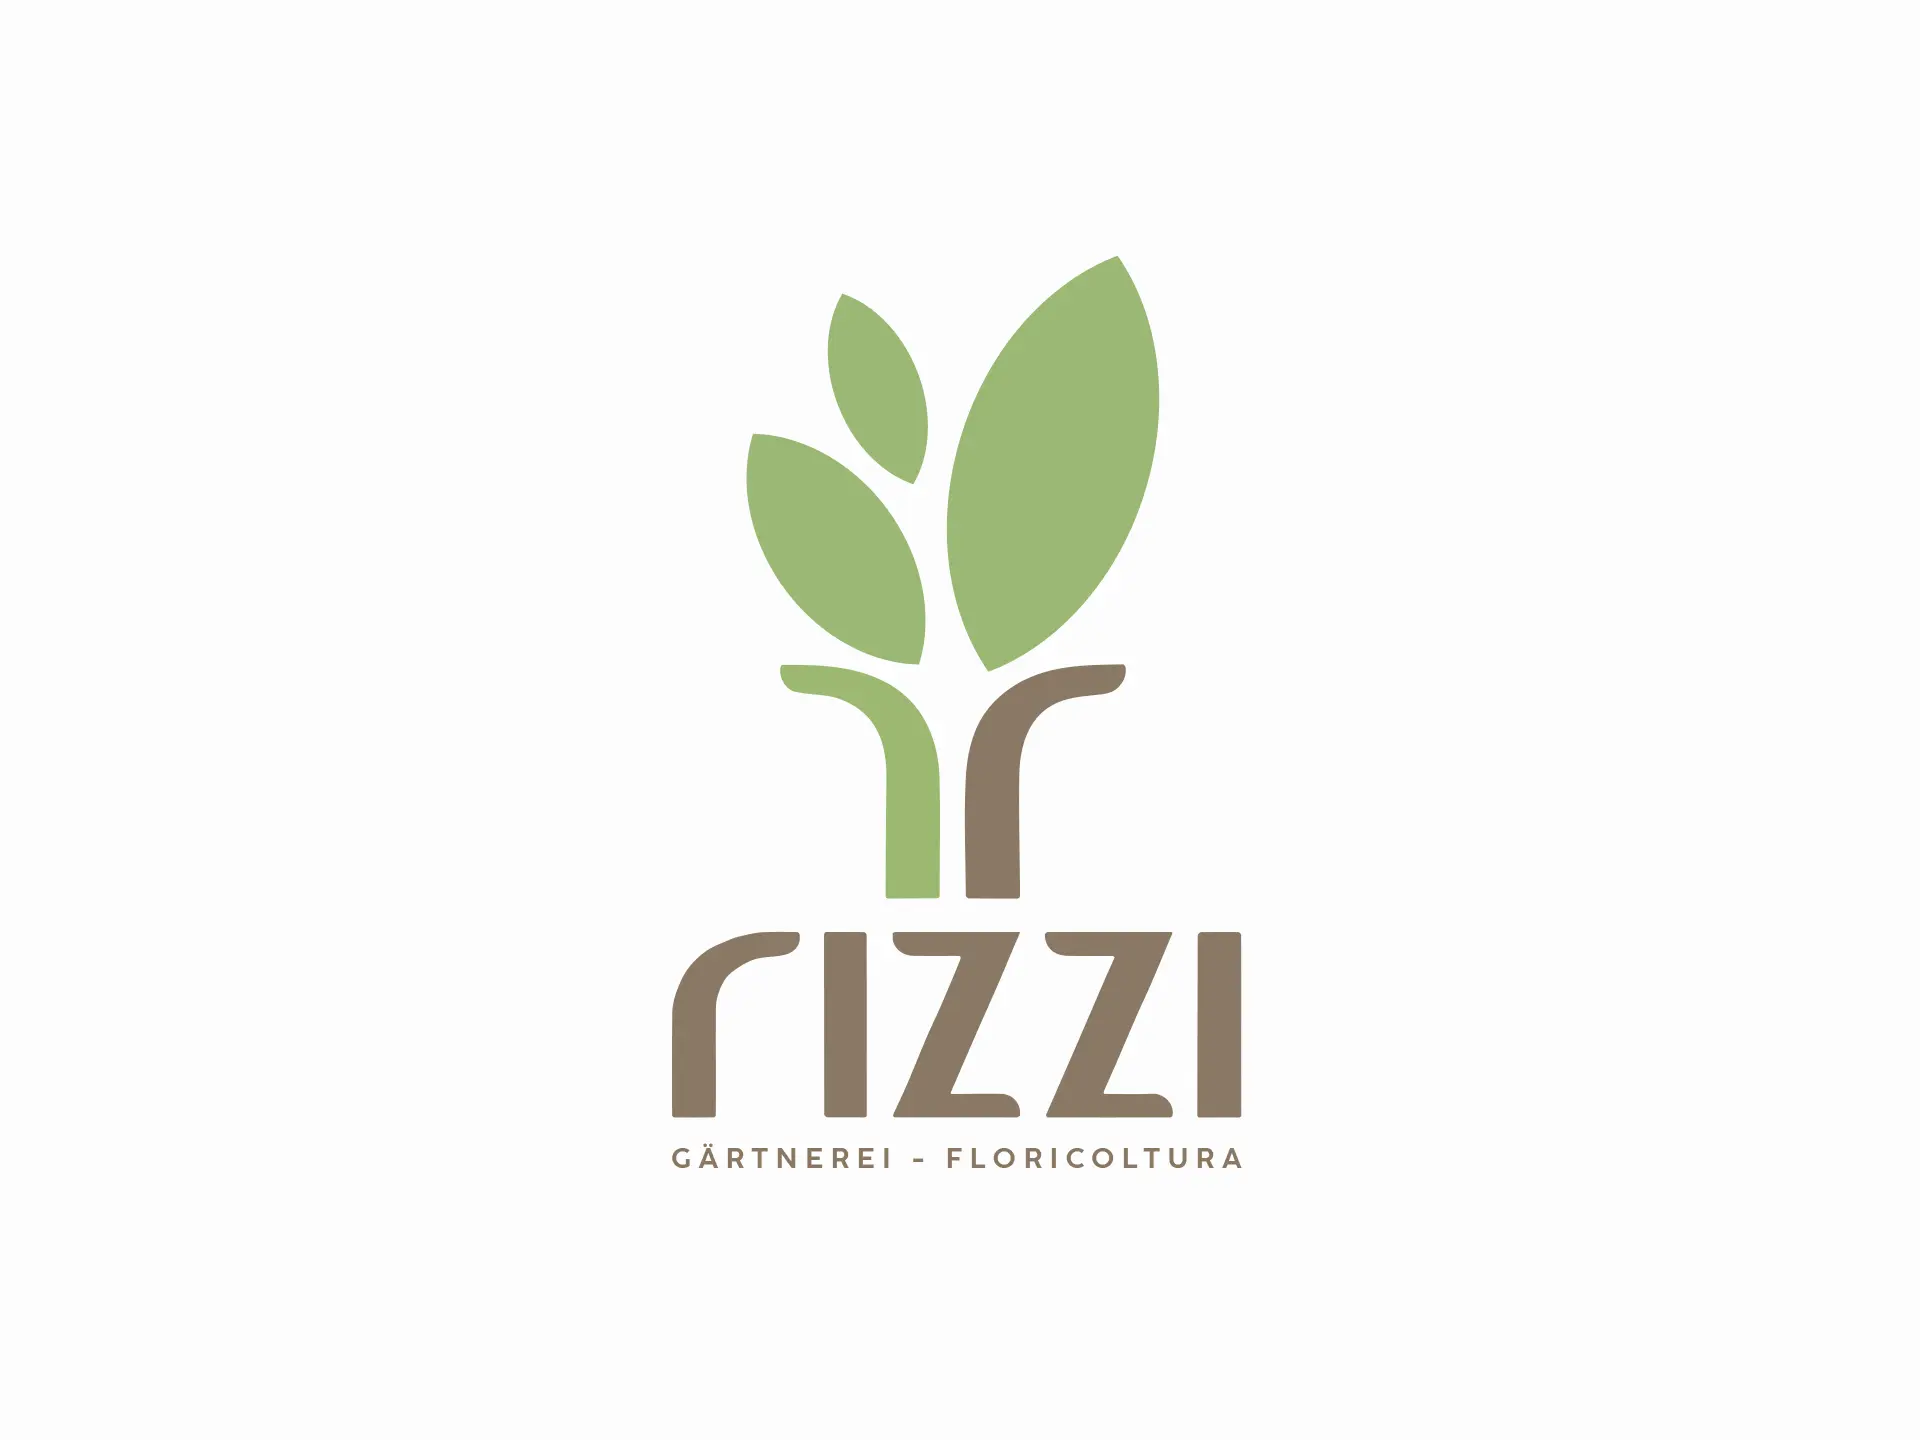 un-real-zampolini-biffi-gentili_rizzi-floricoltura-brand-design_7